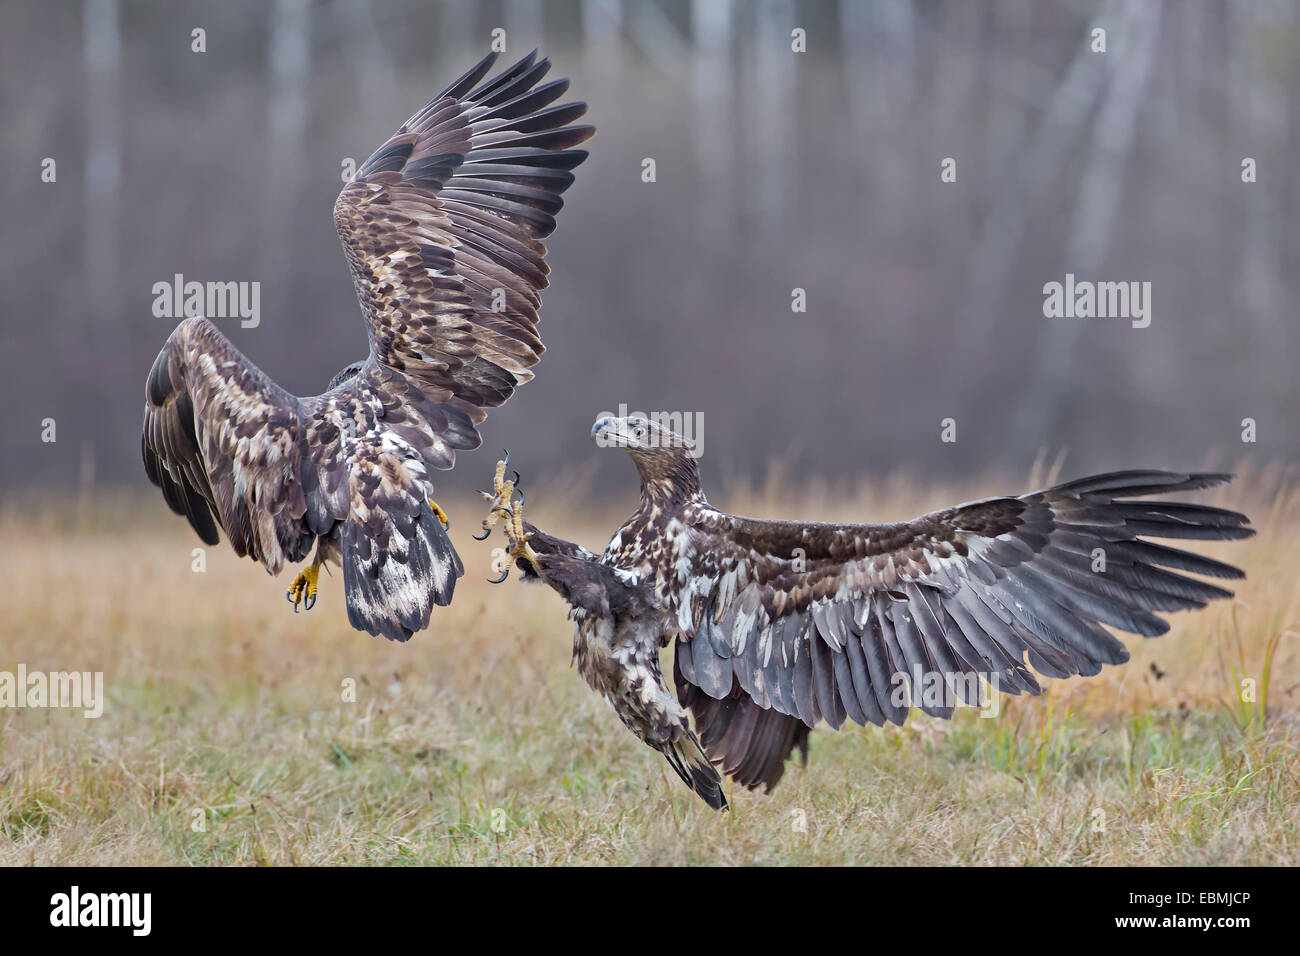 White-tailed eagle (Haliaeetus albicilla), fighting young birds, Poland Stock Photo